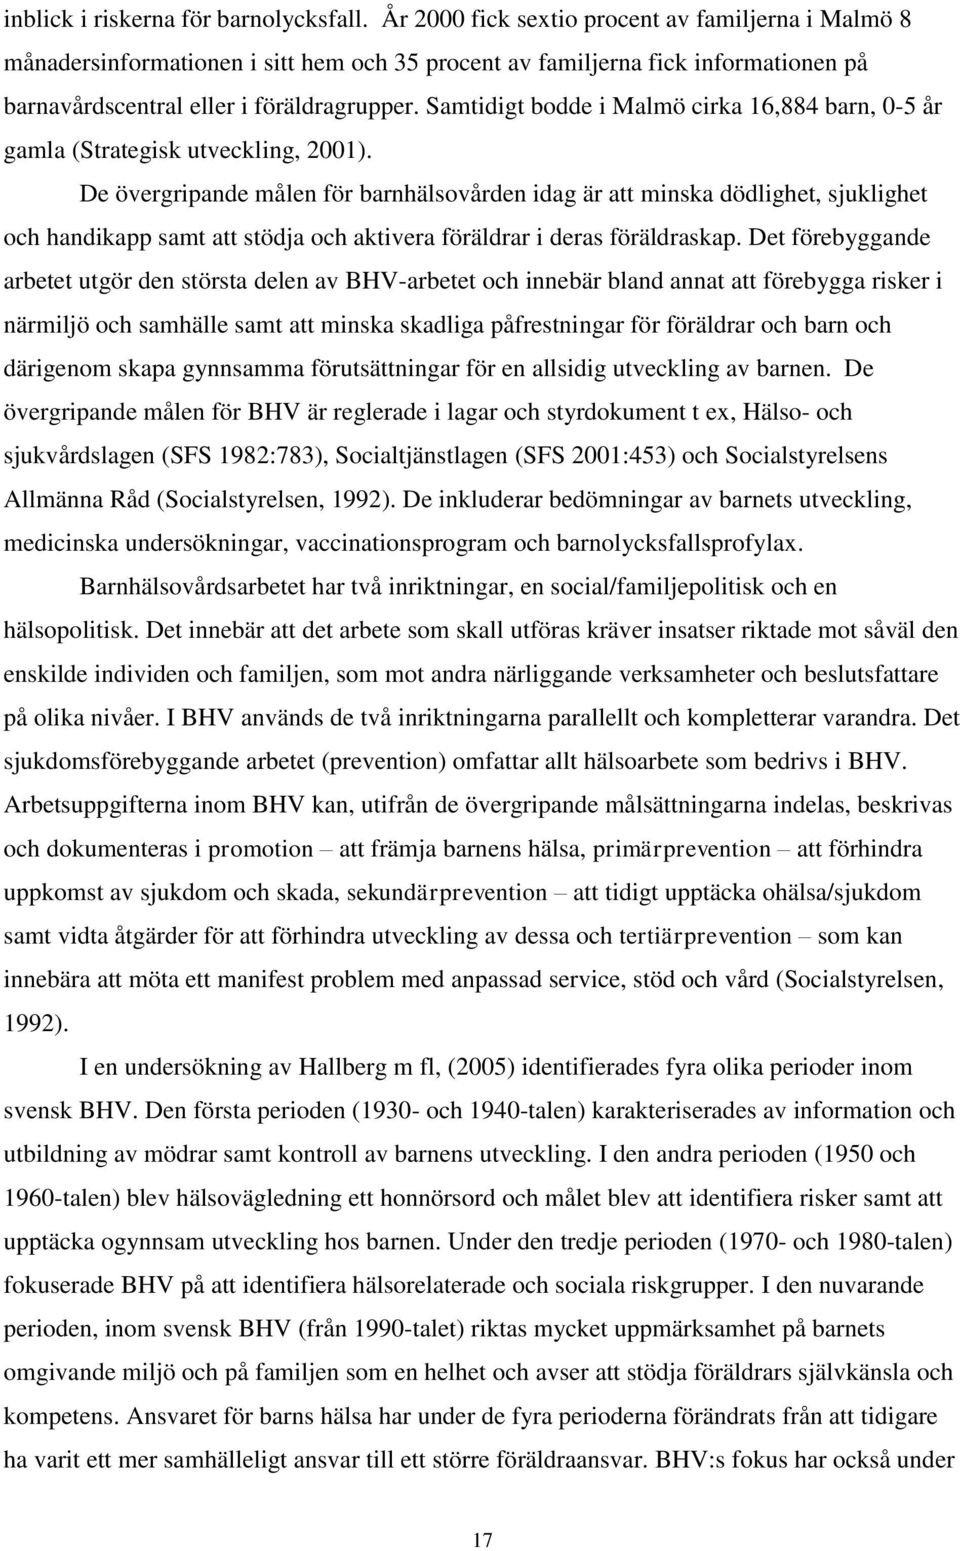 Samtidigt bodde i Malmö cirka 16,884 barn, 0-5 år gamla (Strategisk utveckling, 2001).